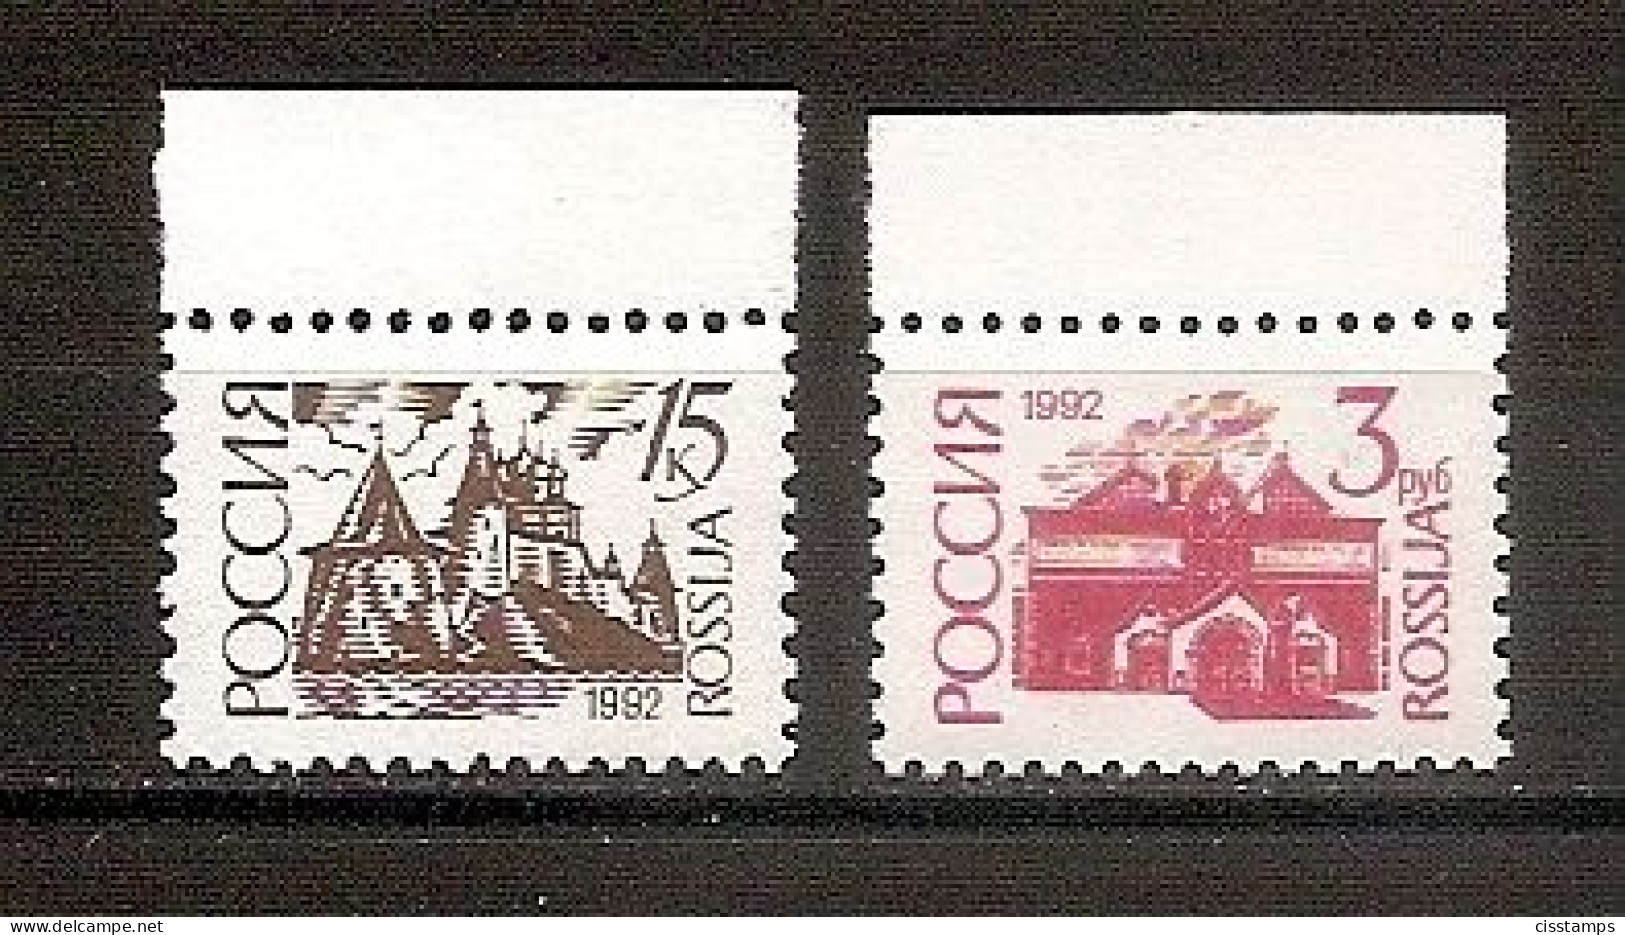 RUSSIA 1992●Definitives Ordinary Paper●12 1/4:12●●Freimarken Normalpapier●Mi 266IICw/268IICw MNH - Unused Stamps